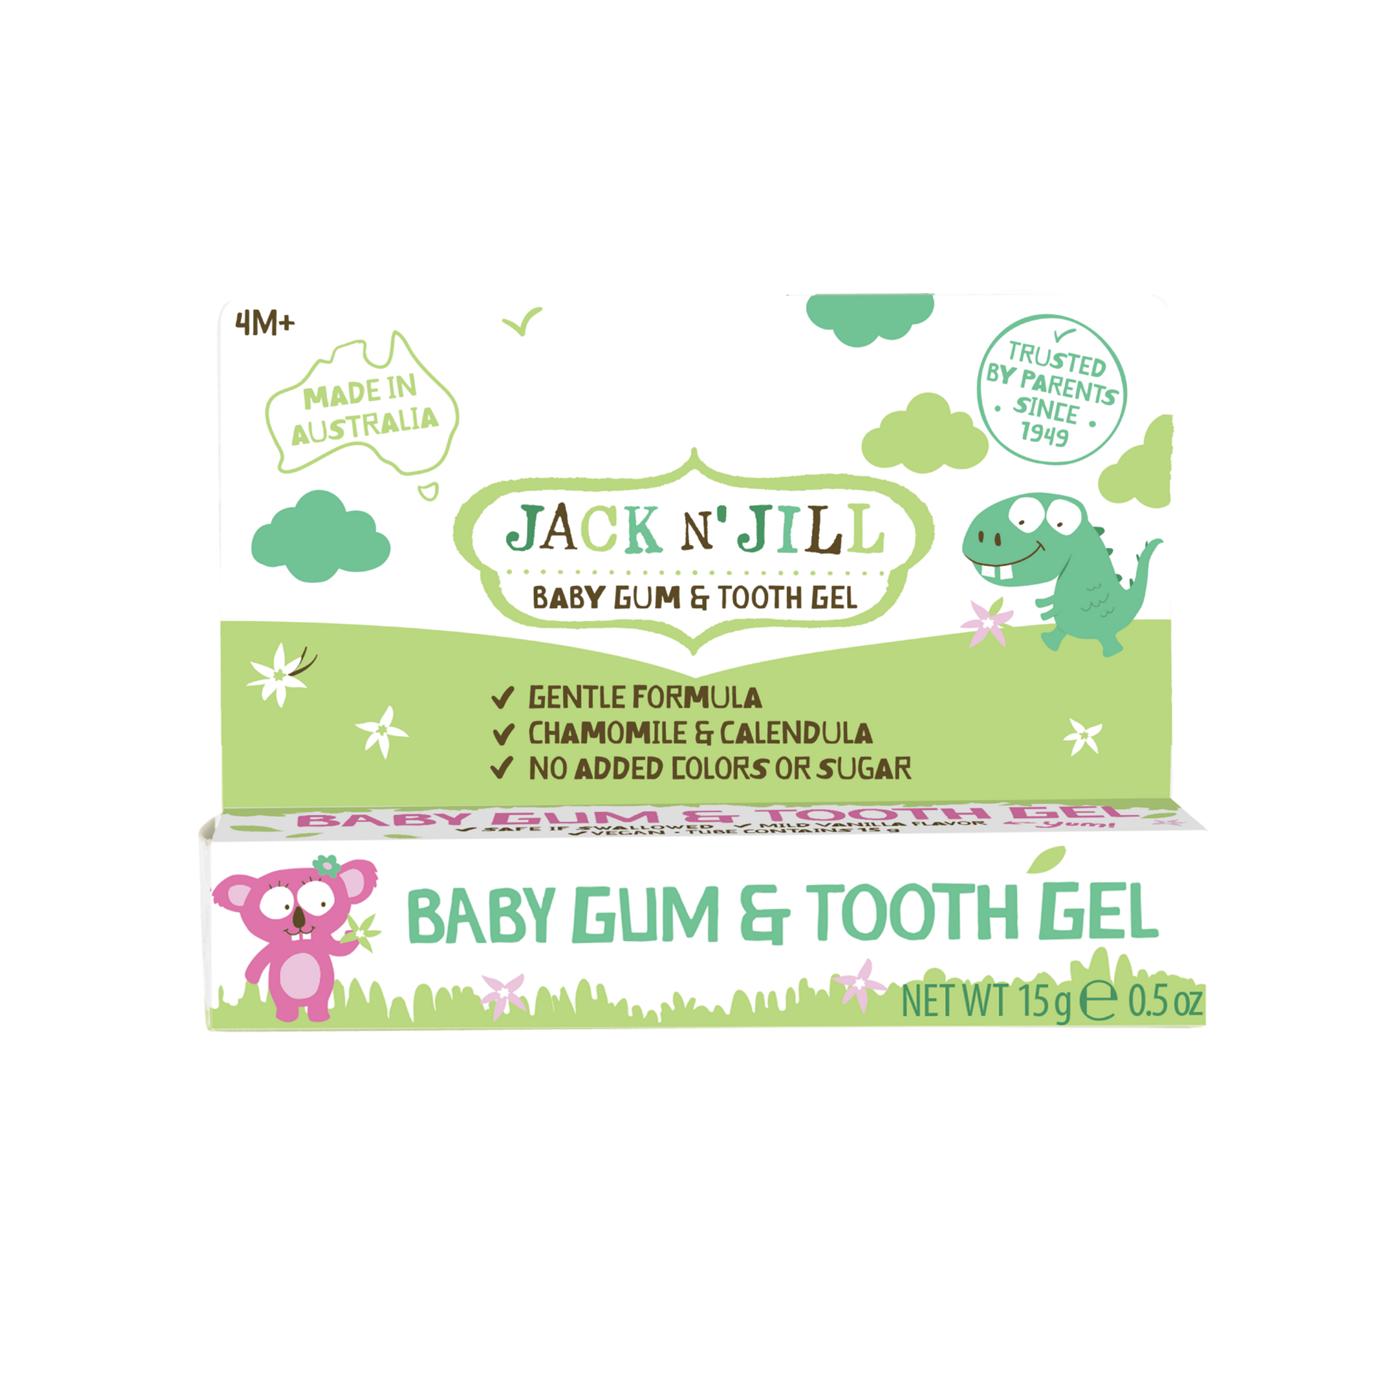 Jack N' Jill Baby Gum & Tooth Gel; image 1 of 2